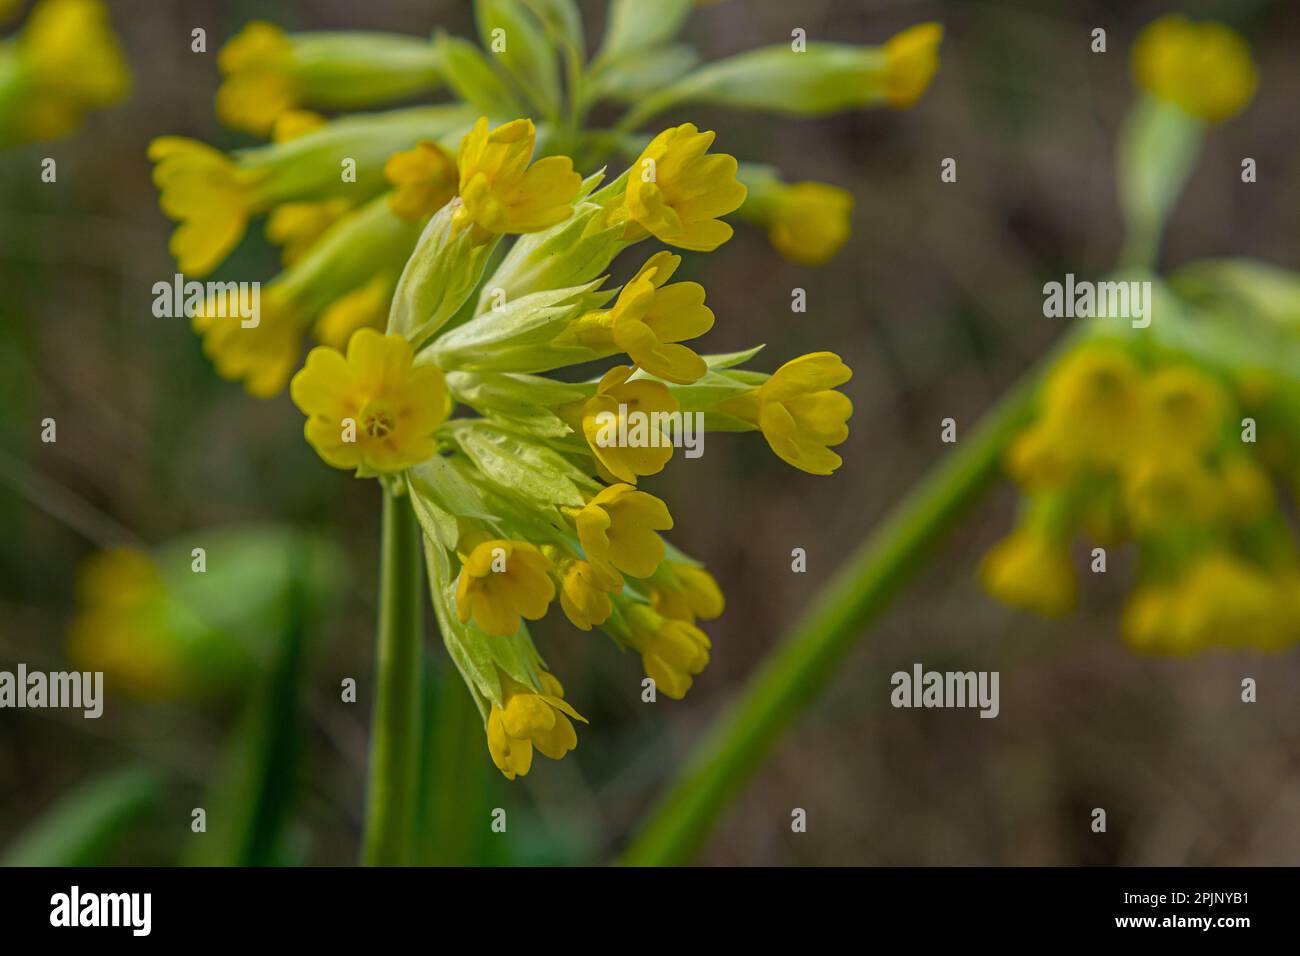 Primula veris ist eine mehrjährige krautige Blütenpflanze der Primrose-Familie Primulaceae. Die Art ist in den meisten Teilen des gemäßigten Europas einheimisch. Stockfoto